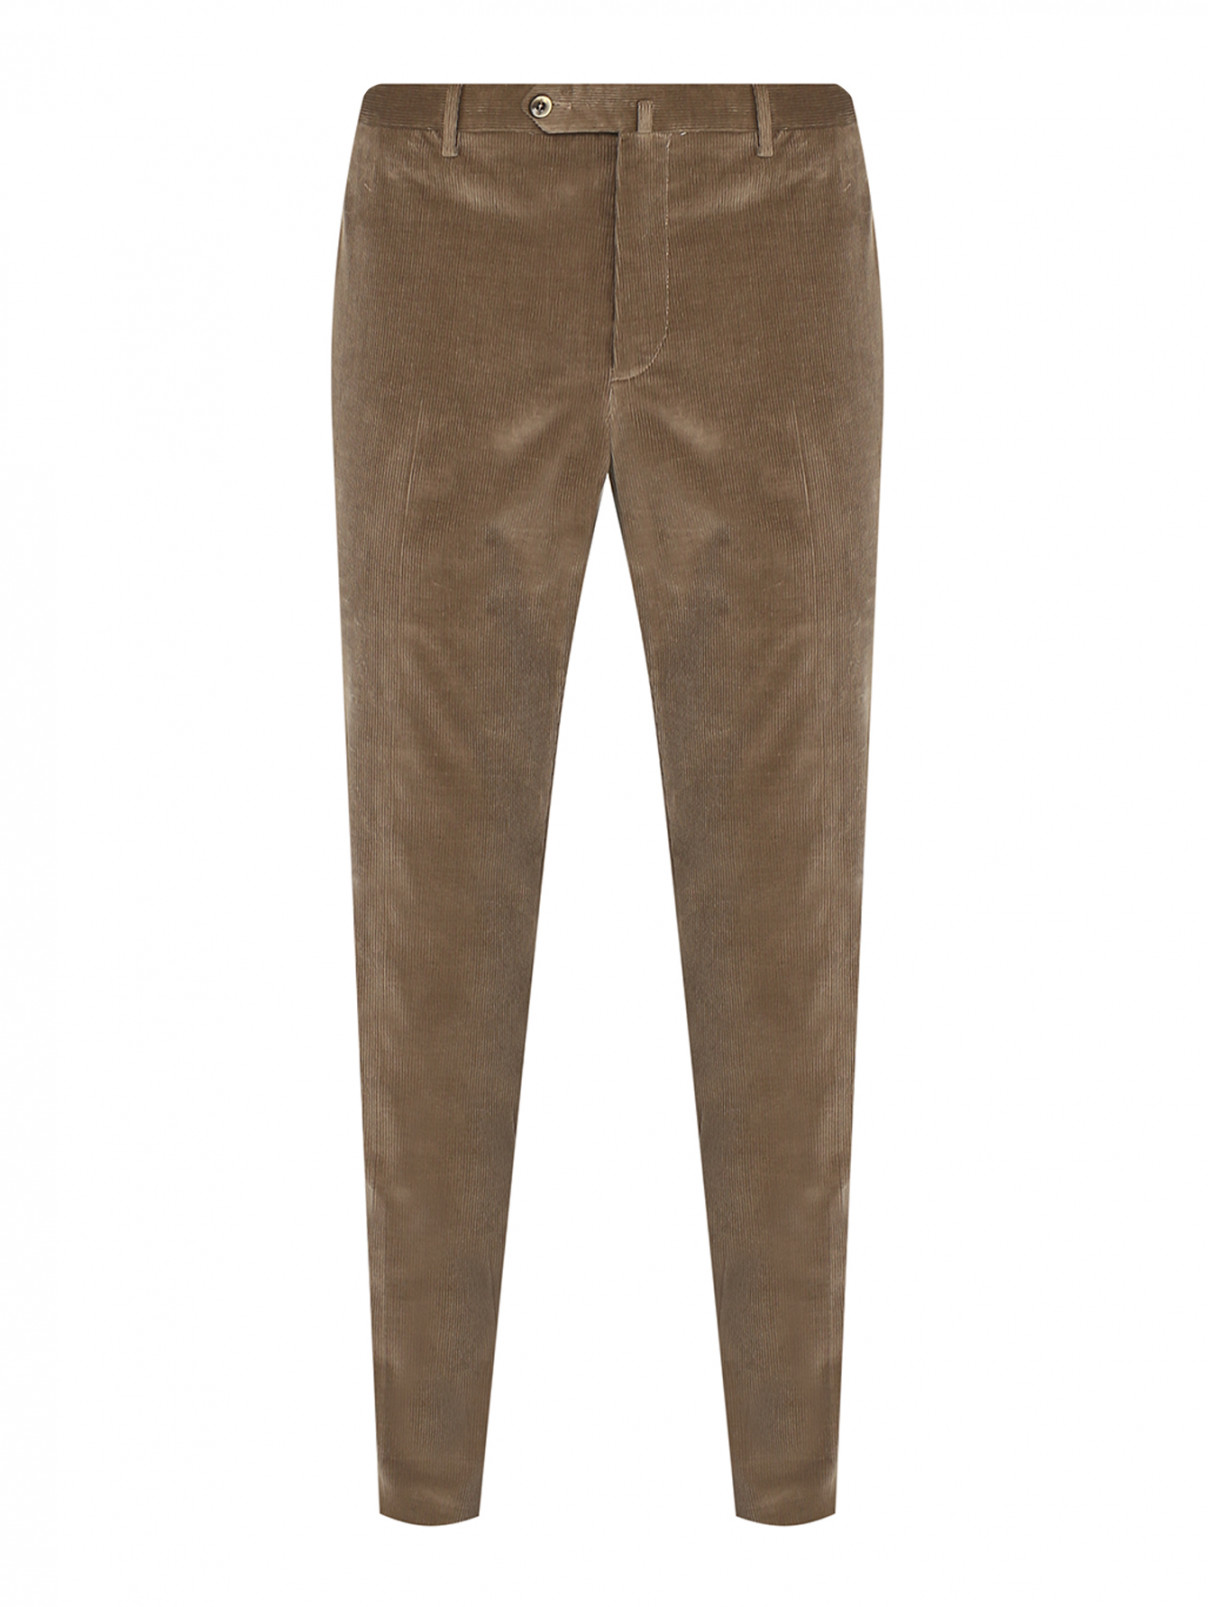 Вельветовые брюки зауженного кроя PT Torino  –  Общий вид  – Цвет:  Зеленый